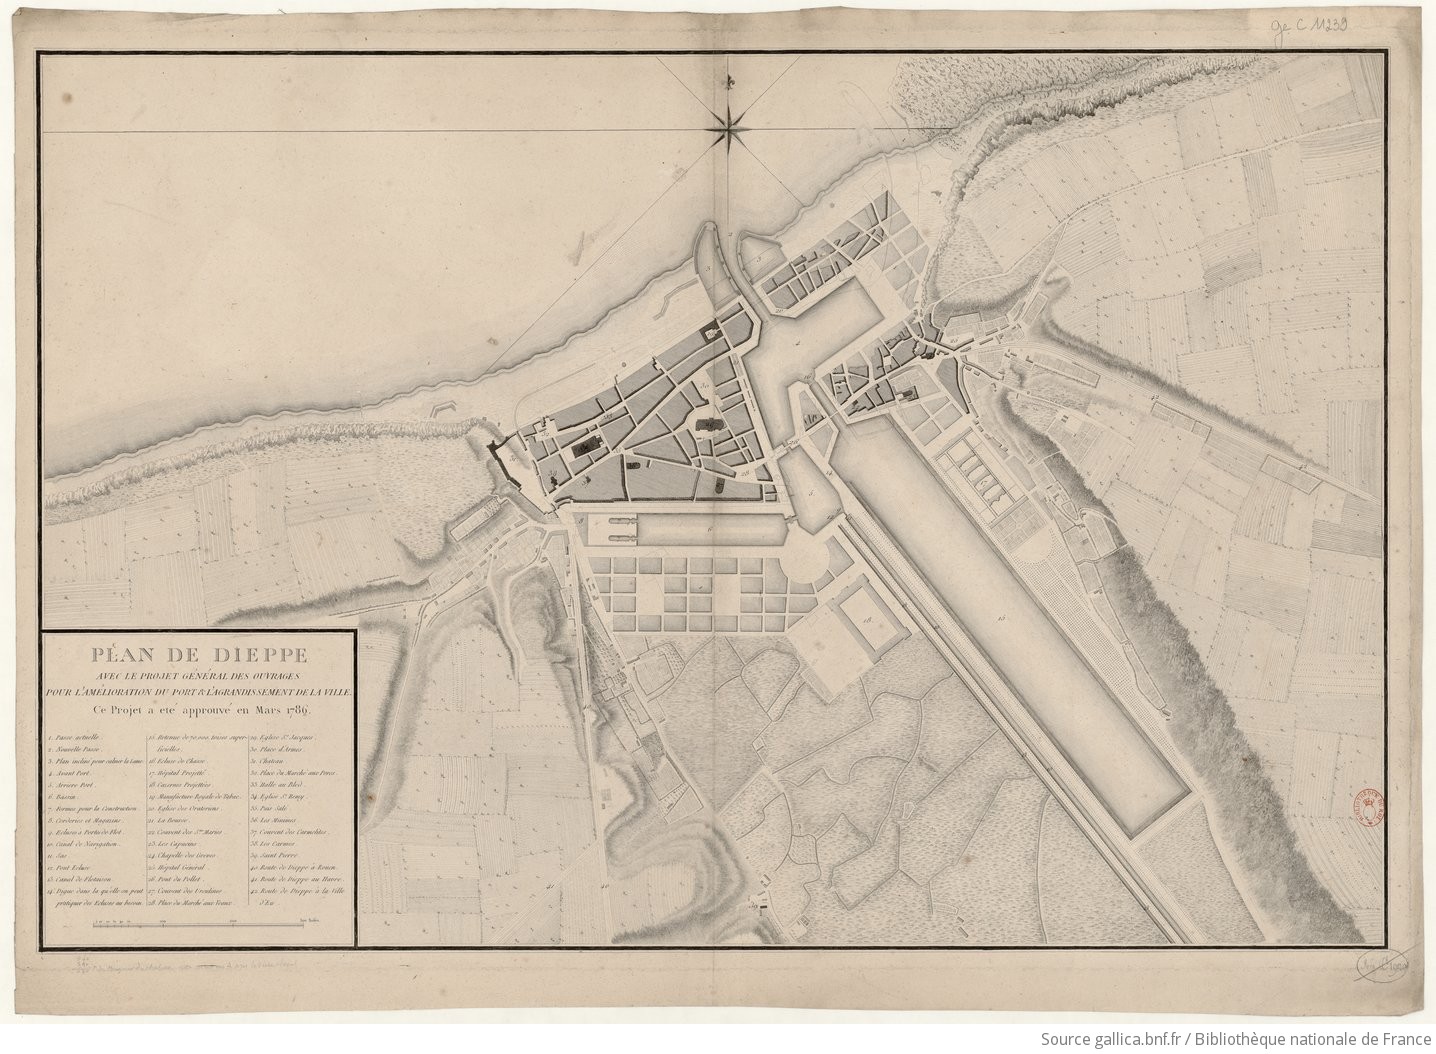 Plan de Dieppe avec le projet général des ouvrages pour l'amélioration du port et l'agrandissement de la ville. Ce projet a été approuvé en mars 1786